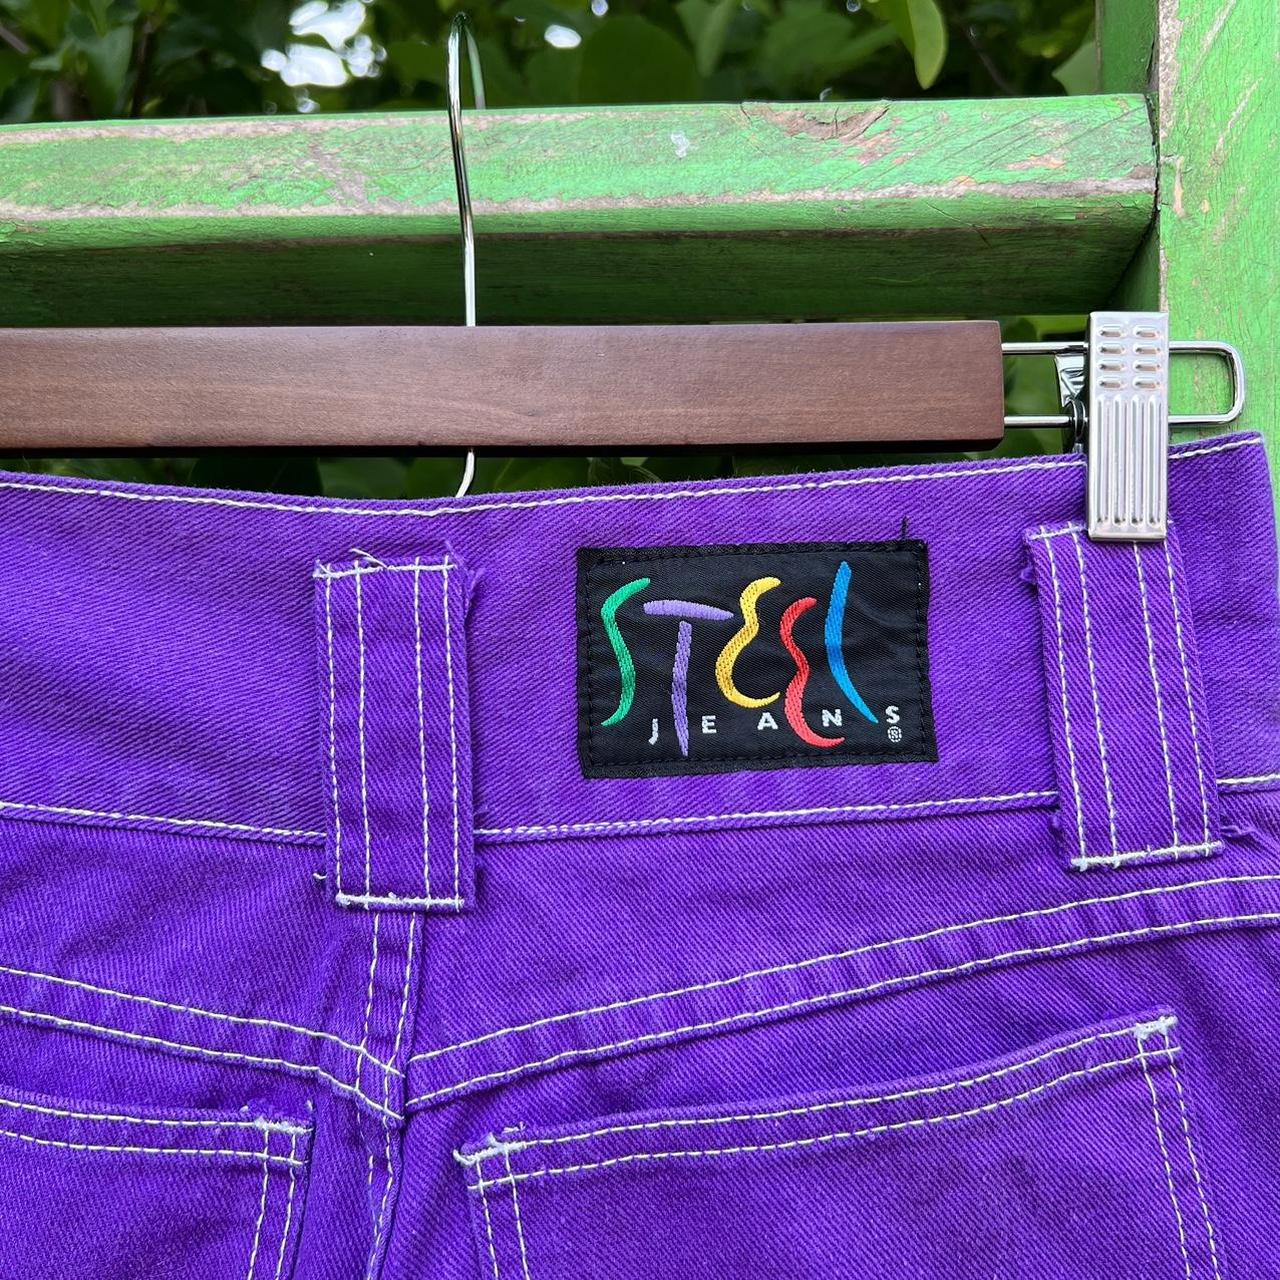 STEEL Jeans Women's Purple Shorts | Depop